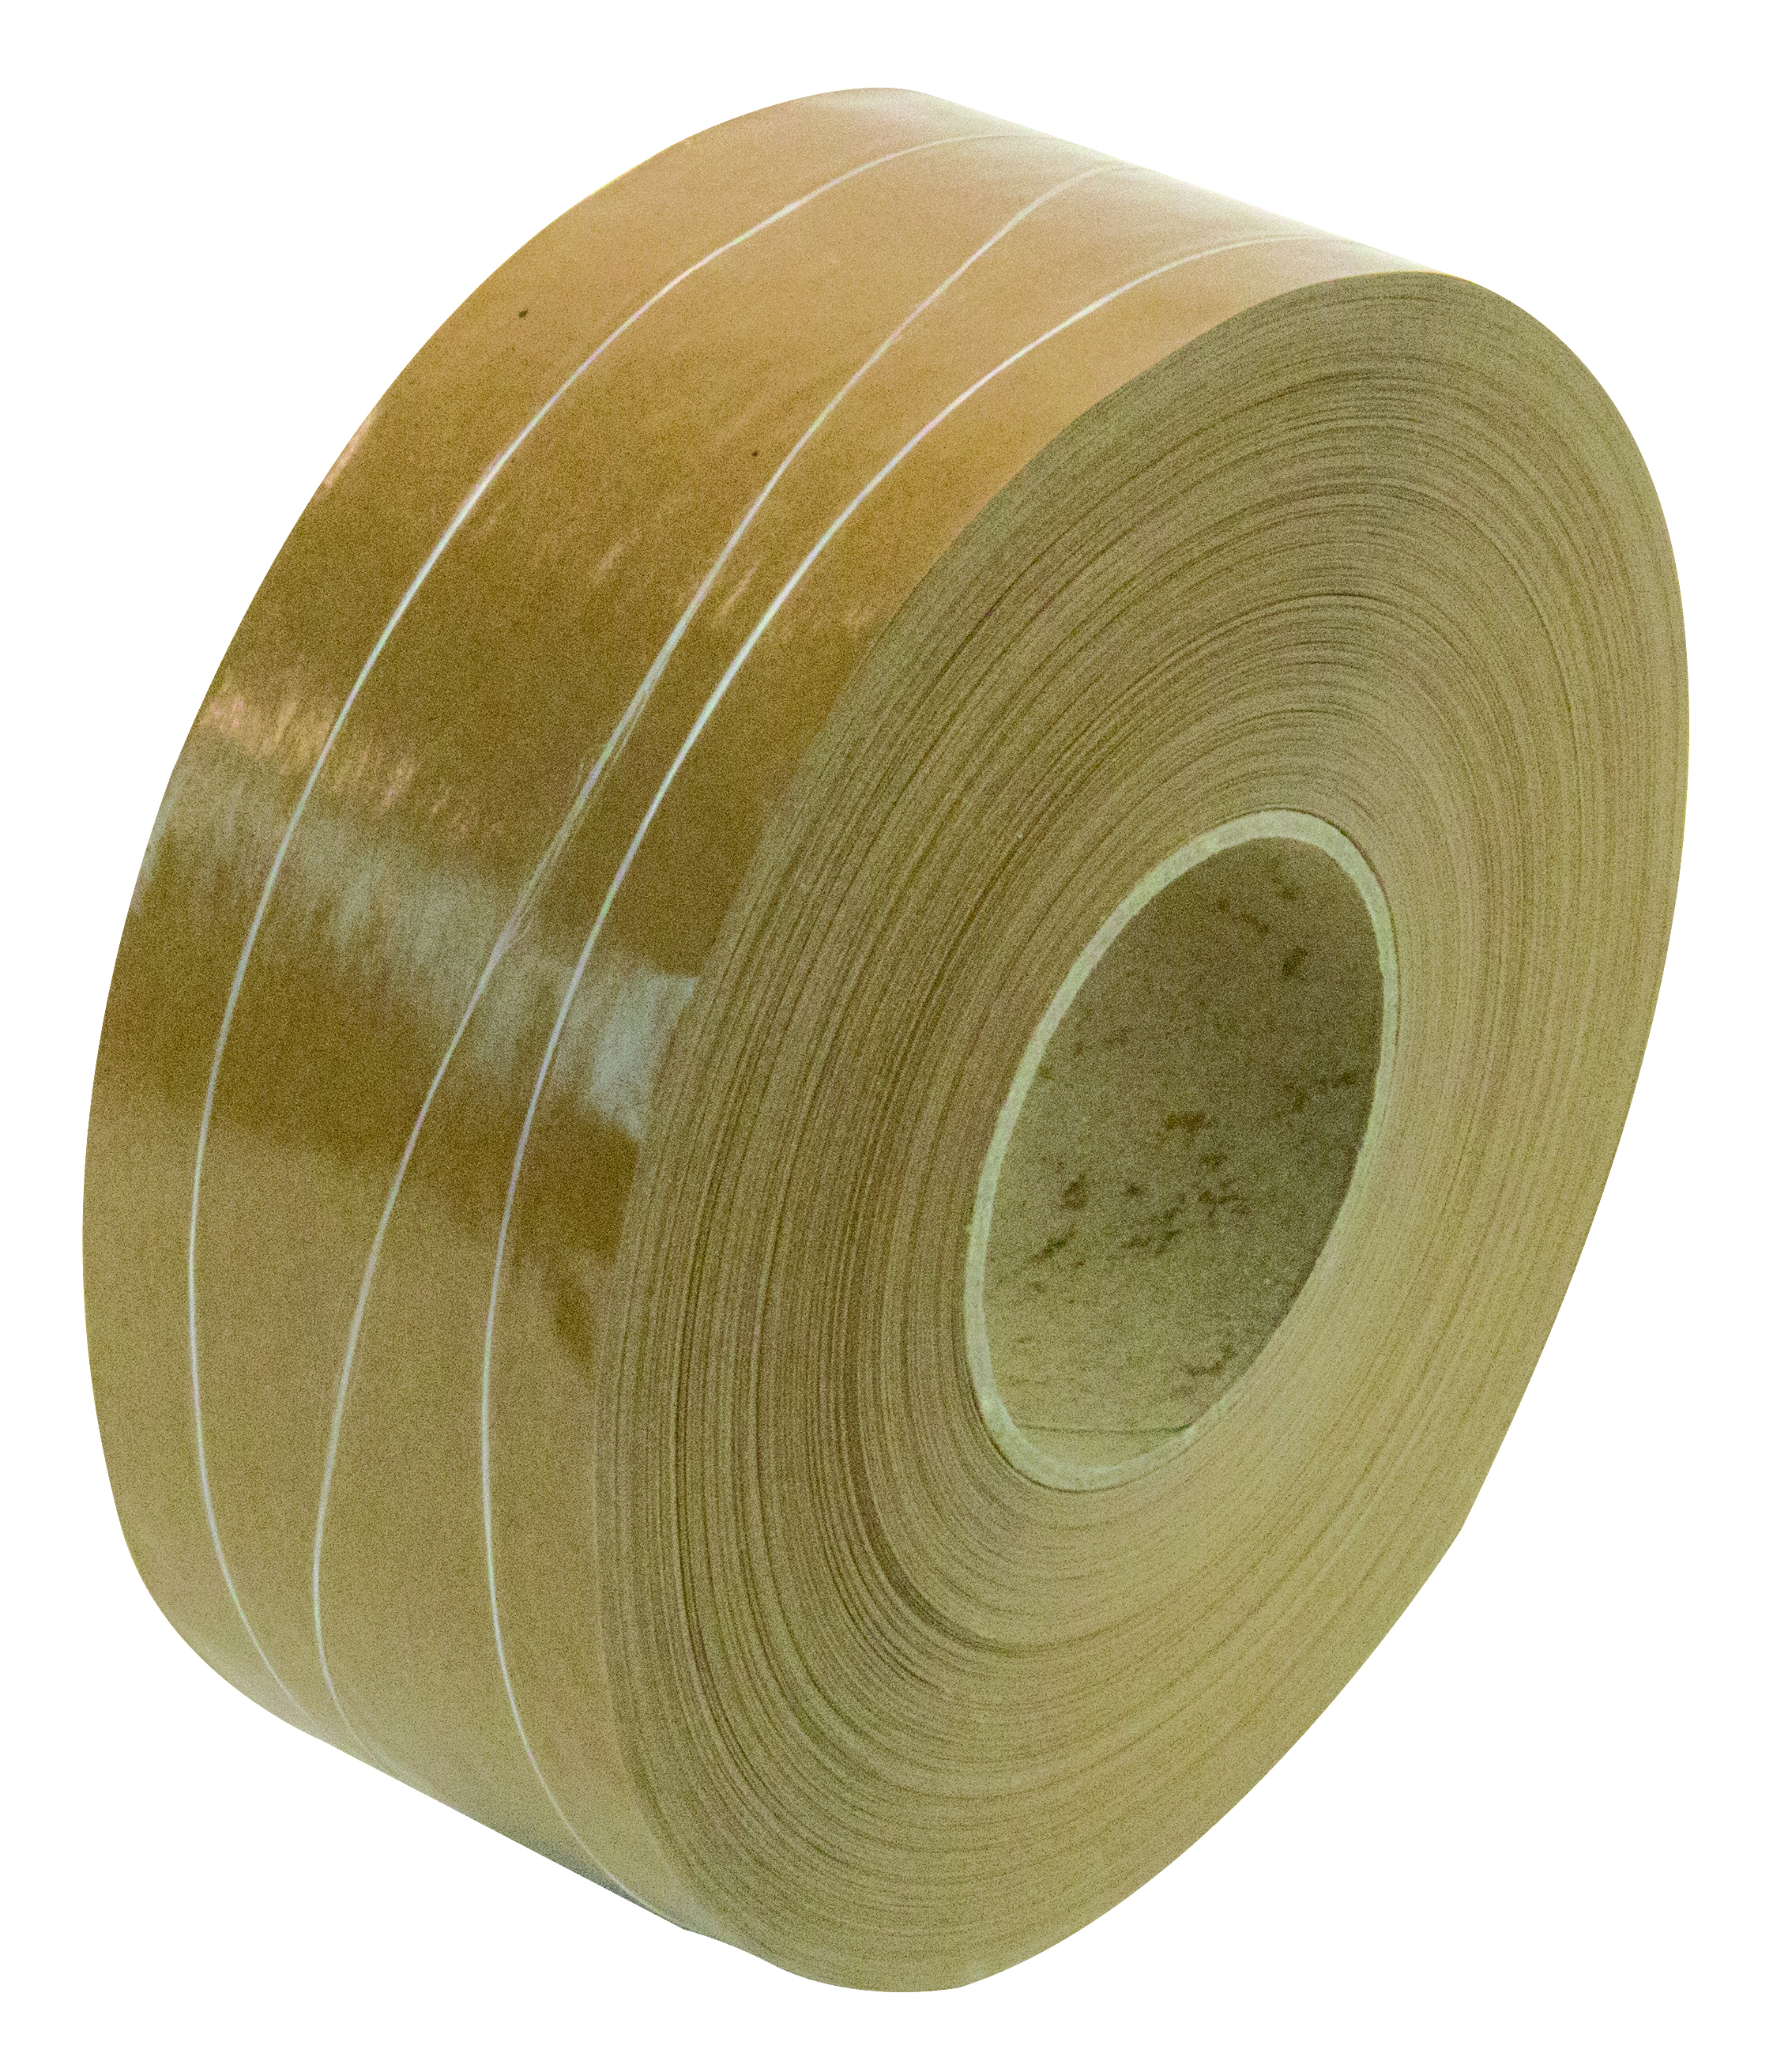 Bande papier renforcé 2 fils + 1 sinus Matériau de fermeture très solide et durable. Pour les colis lourds pesant jusqu'à 35 kg.